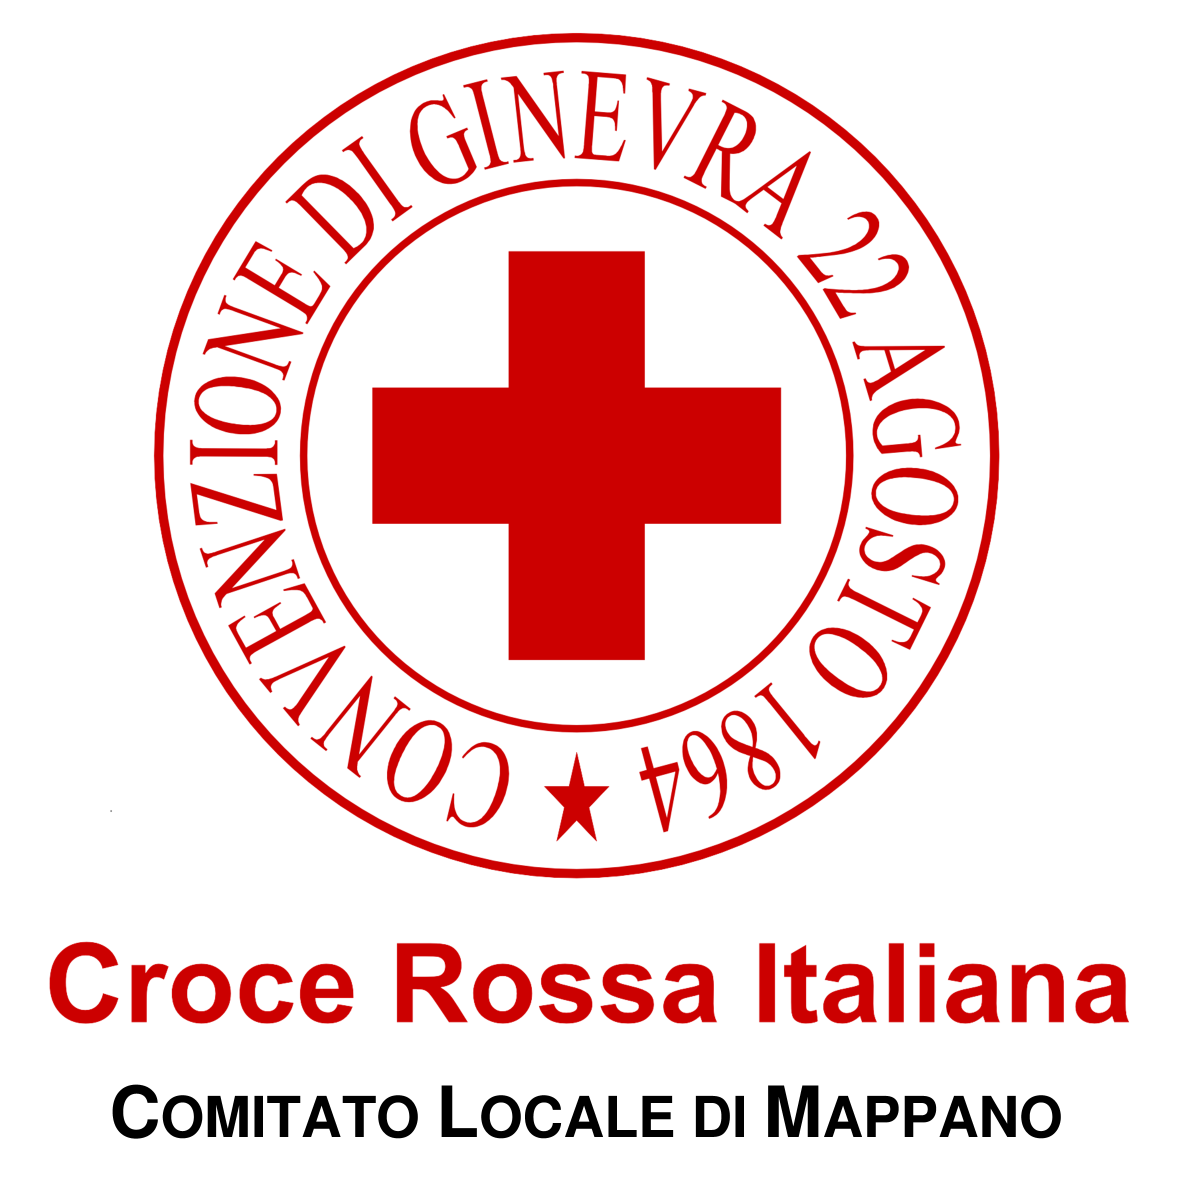 La pagina ufficiale di Croce Rossa Italiana - Comitato Locale di Mappano